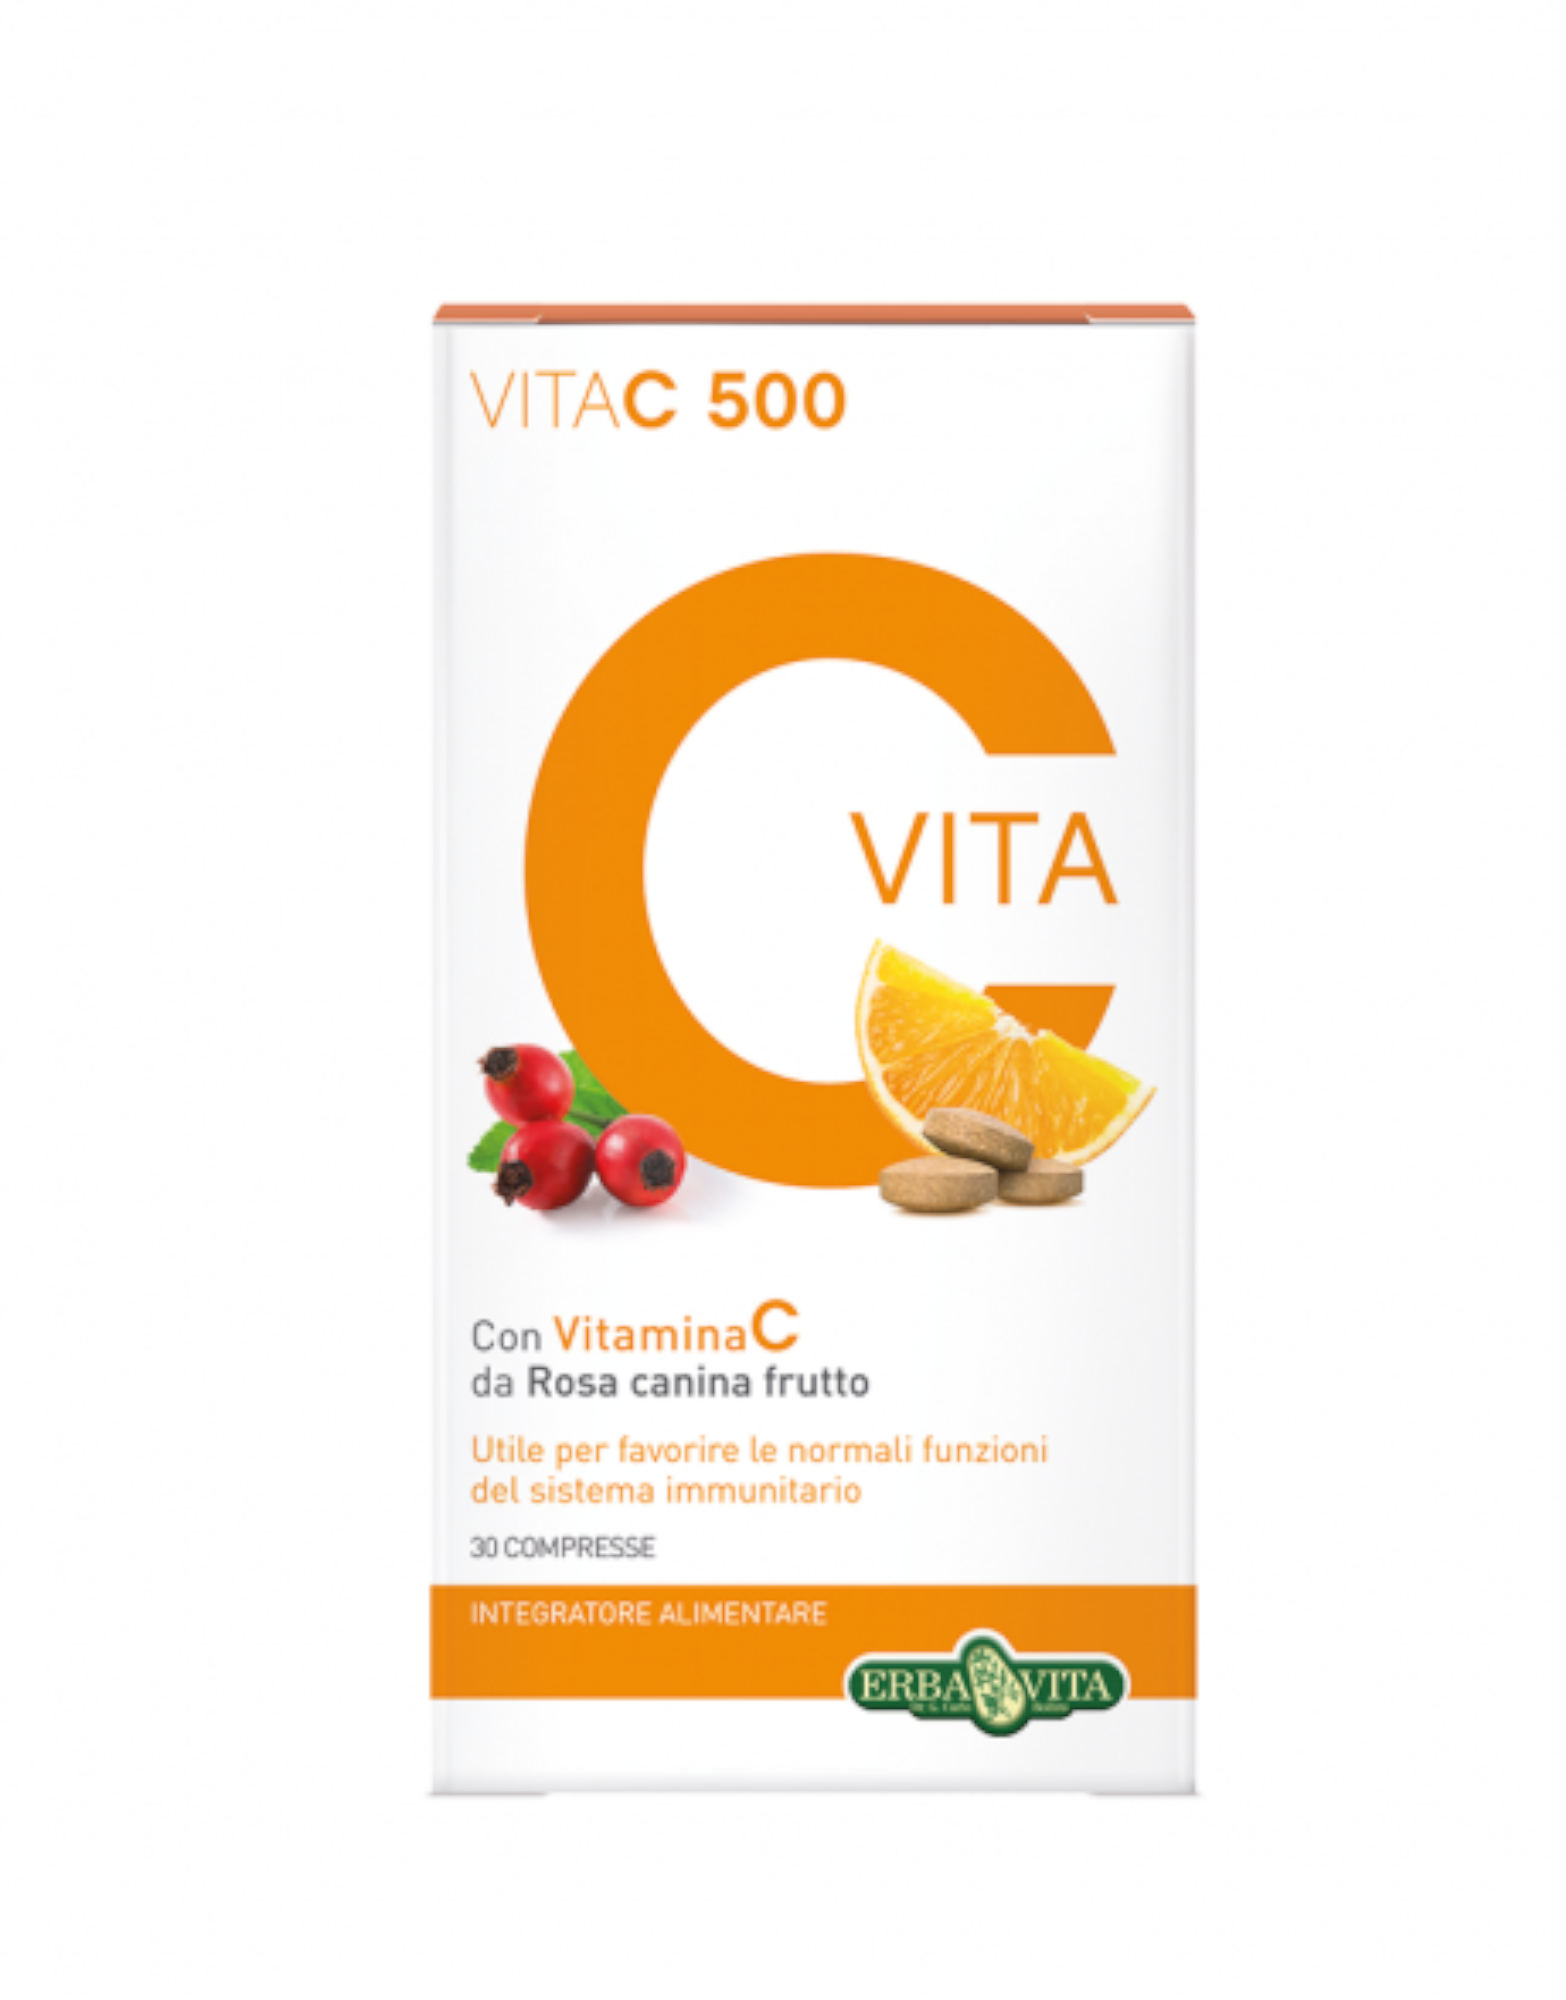 Vita C 500 by Erba 30 tablets - iafstore.com